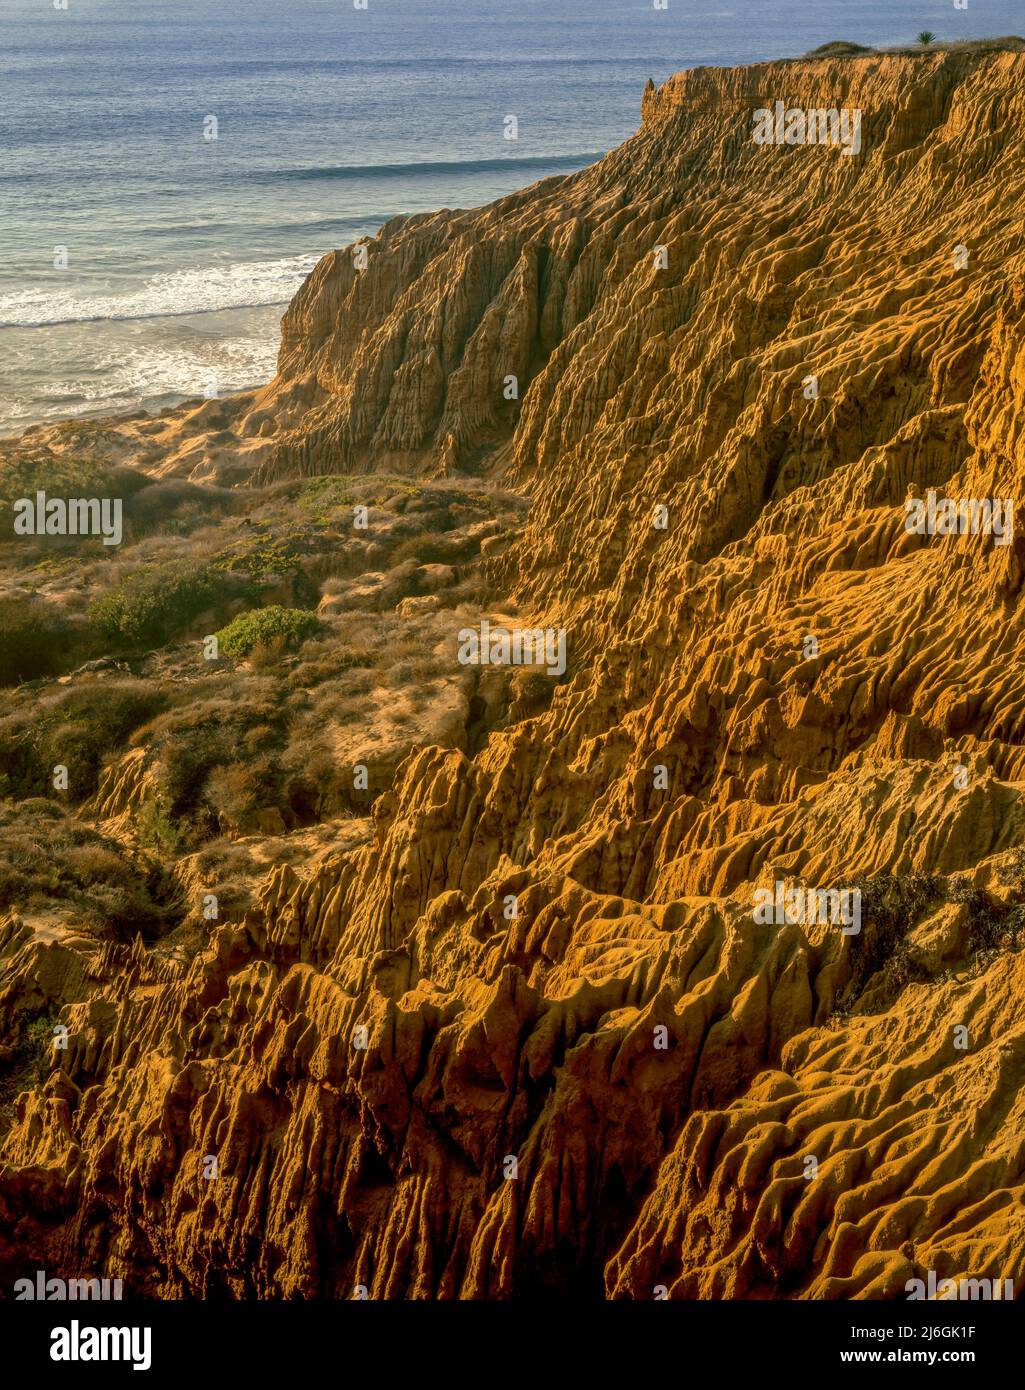 Los acantilados de arenisca, y Playa Estatal Torrey Pines State Reserve, La Jolla, el condado de San Diego, California Foto de stock